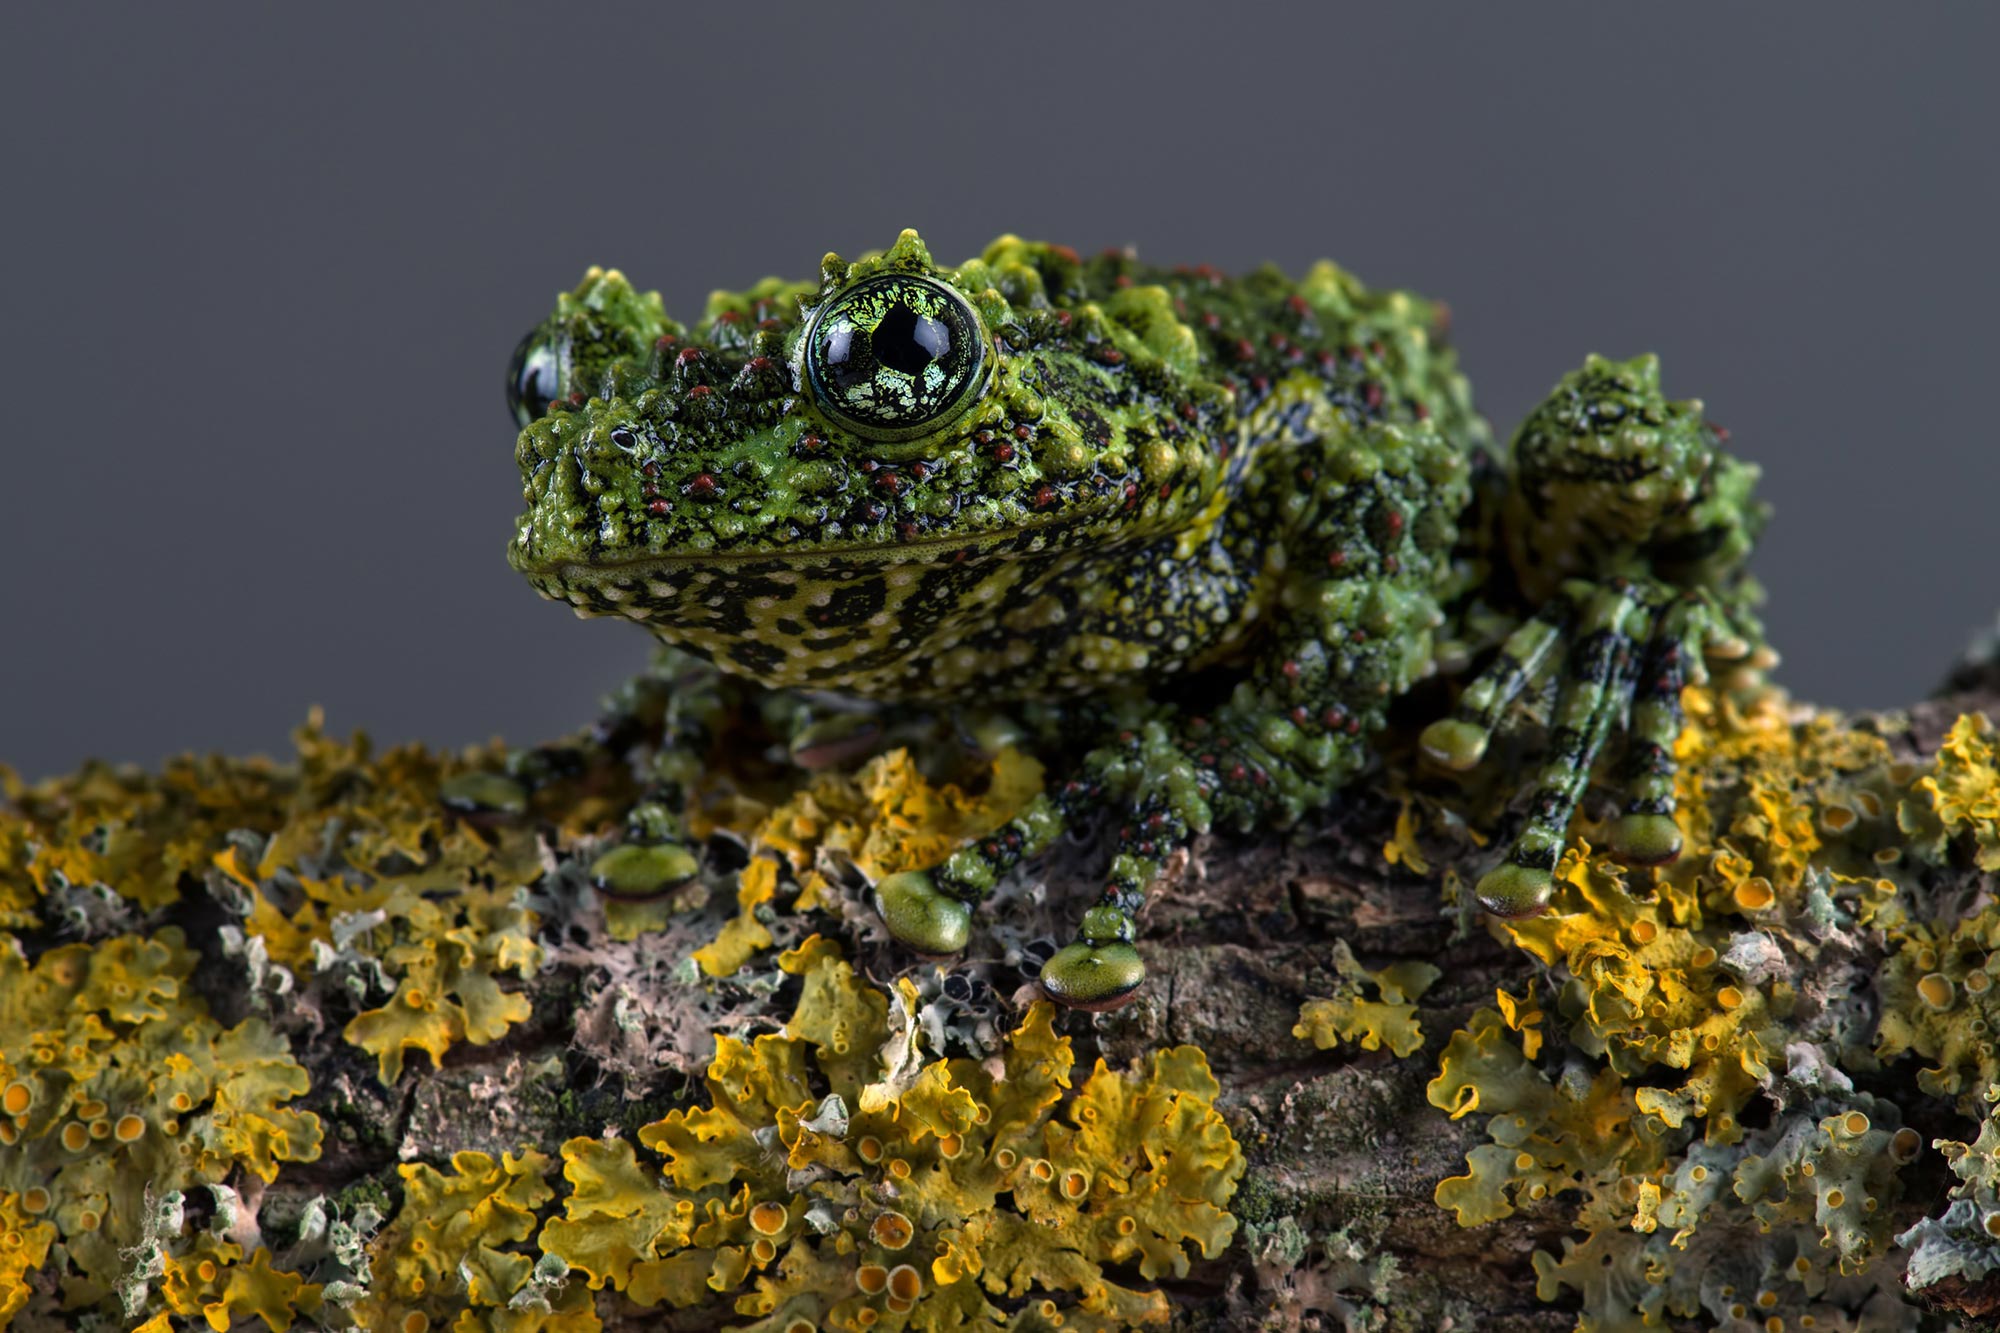 comprehensive-new-amphibian-family-tree-revises-frog-evolution-timeline